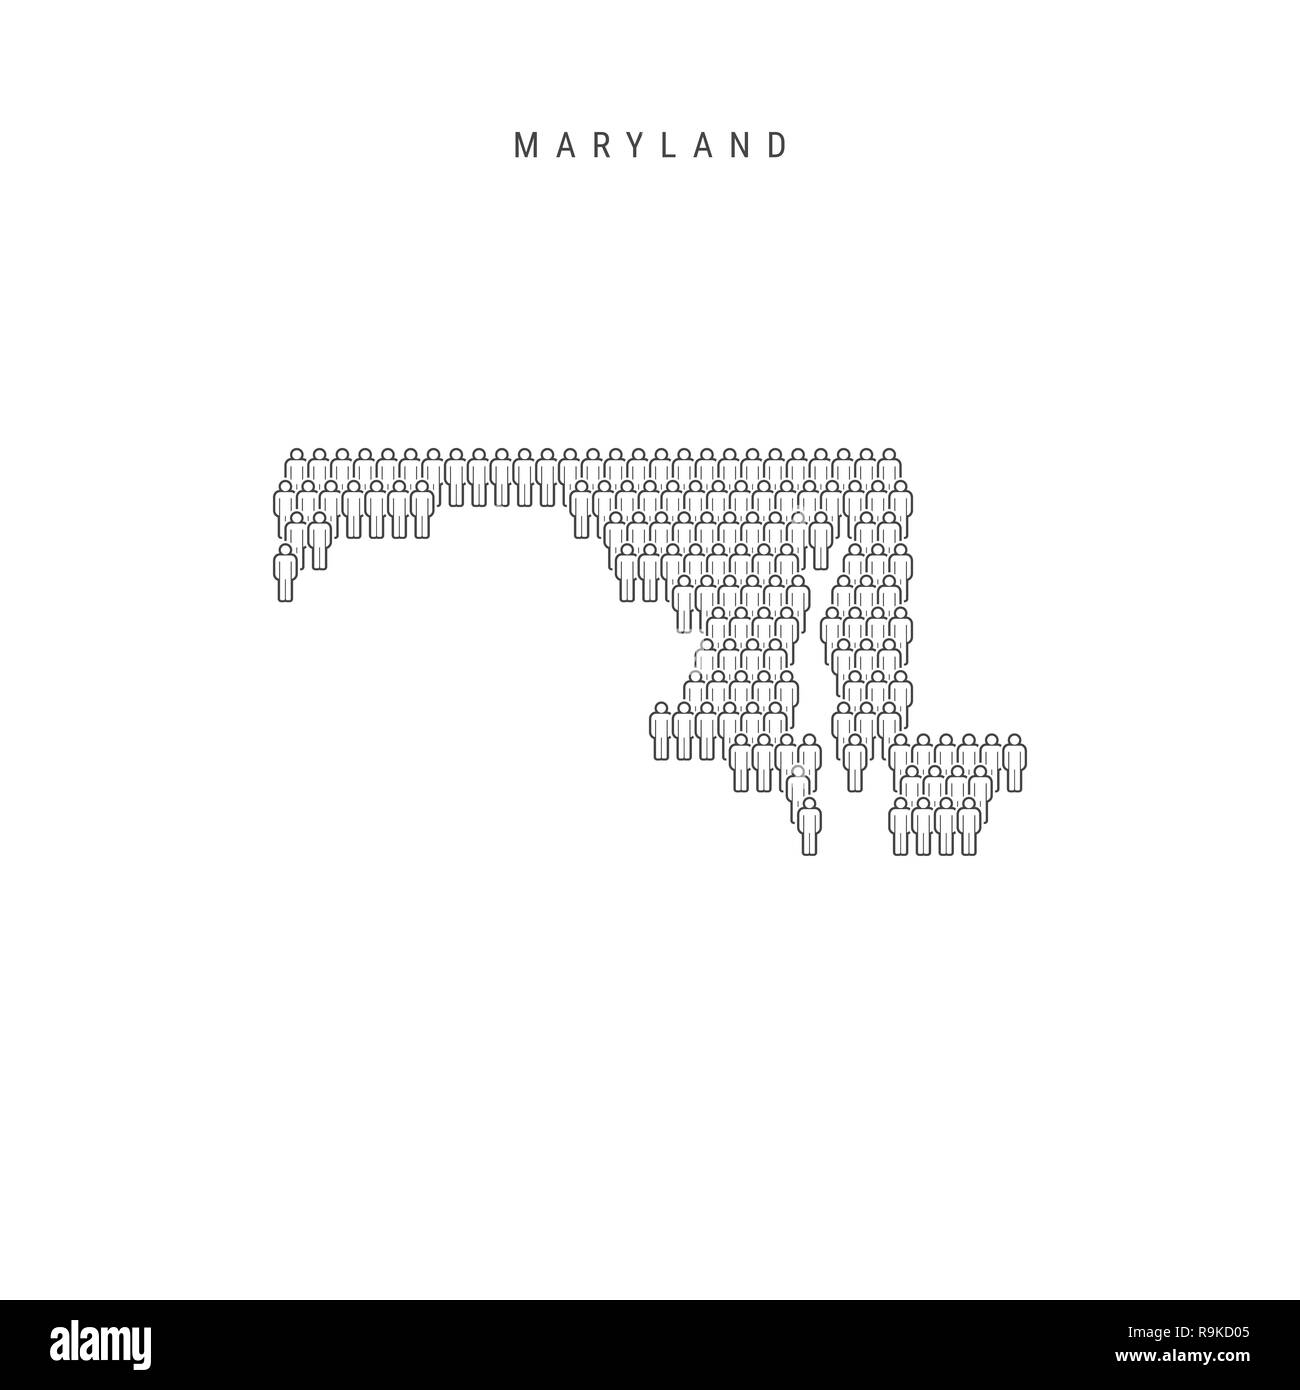 Leute Karte von Maryland, USA. Stilisierte Silhouette, Leute in der Form einer Karte von Maryland. Maryland Bevölkerung. Abbildung isoliert auf W Stockfoto